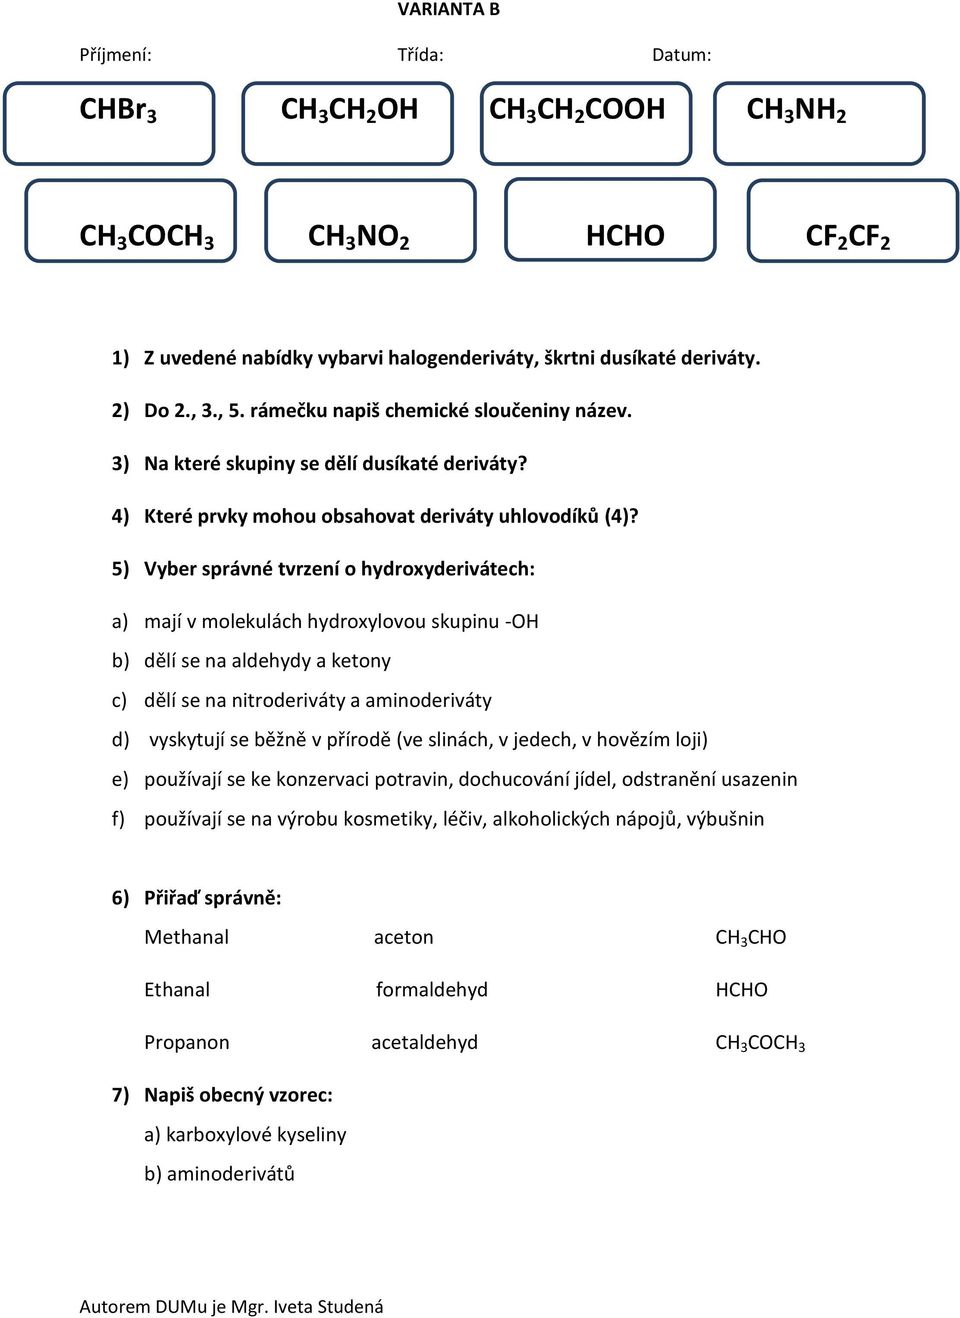 5) Vyber správné tvrzení o hydroxyderivátech: a) mají v molekulách hydroxylovou skupinu -OH b) dělí se na aldehydy a ketony c) dělí se na nitroderiváty a aminoderiváty d) vyskytují se běžně v přírodě